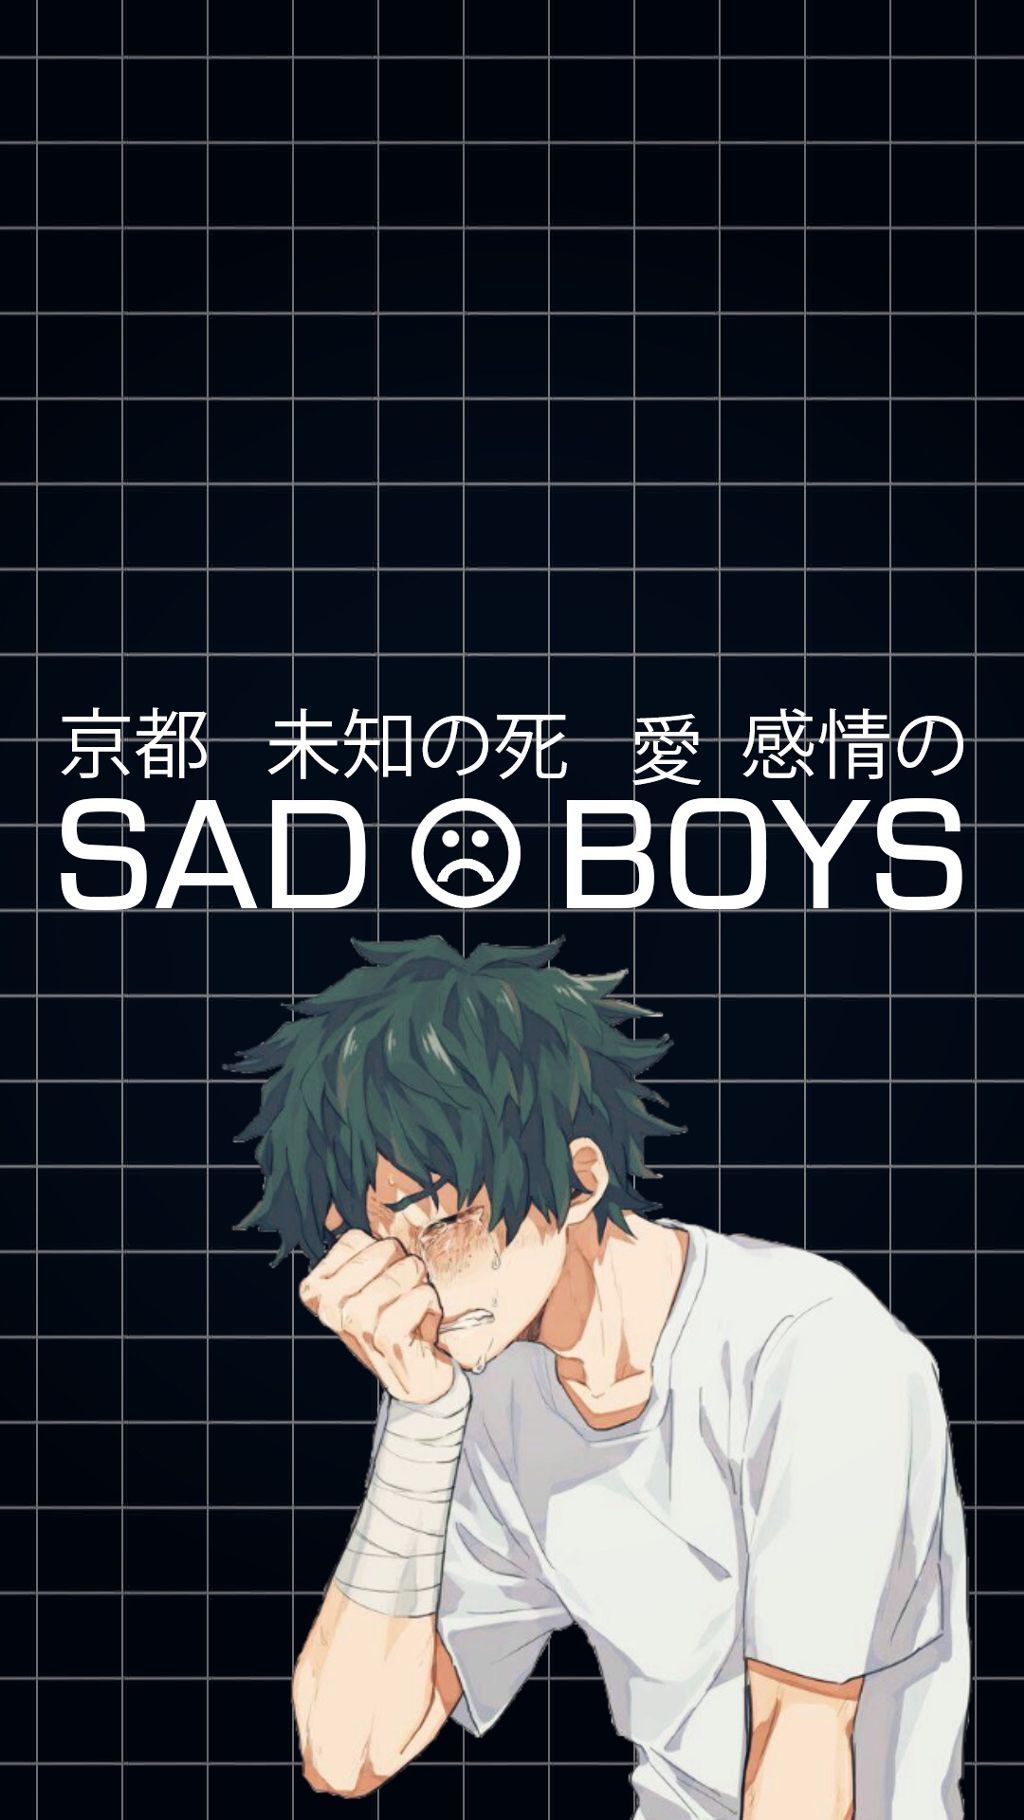 bnha #bokunoheroacademia #myheroacademia #sad #sadboy Wallpaper iPhone